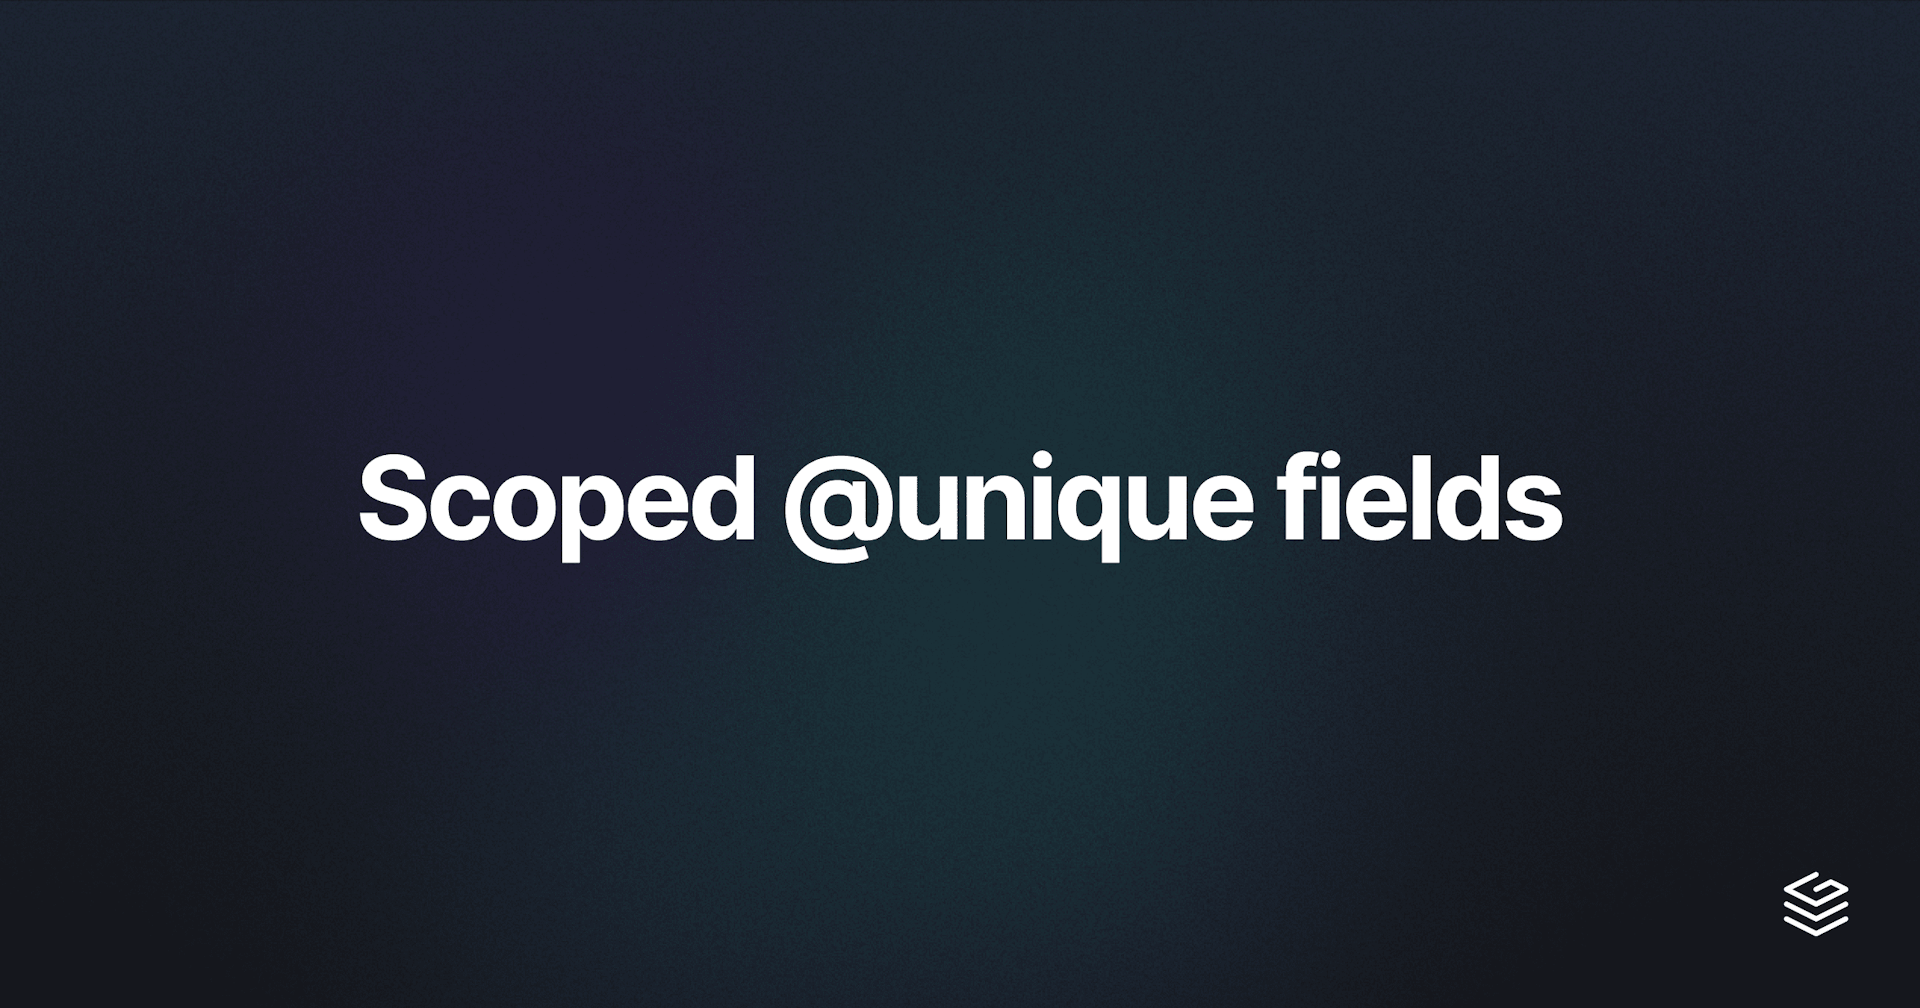 Scoped unique fields